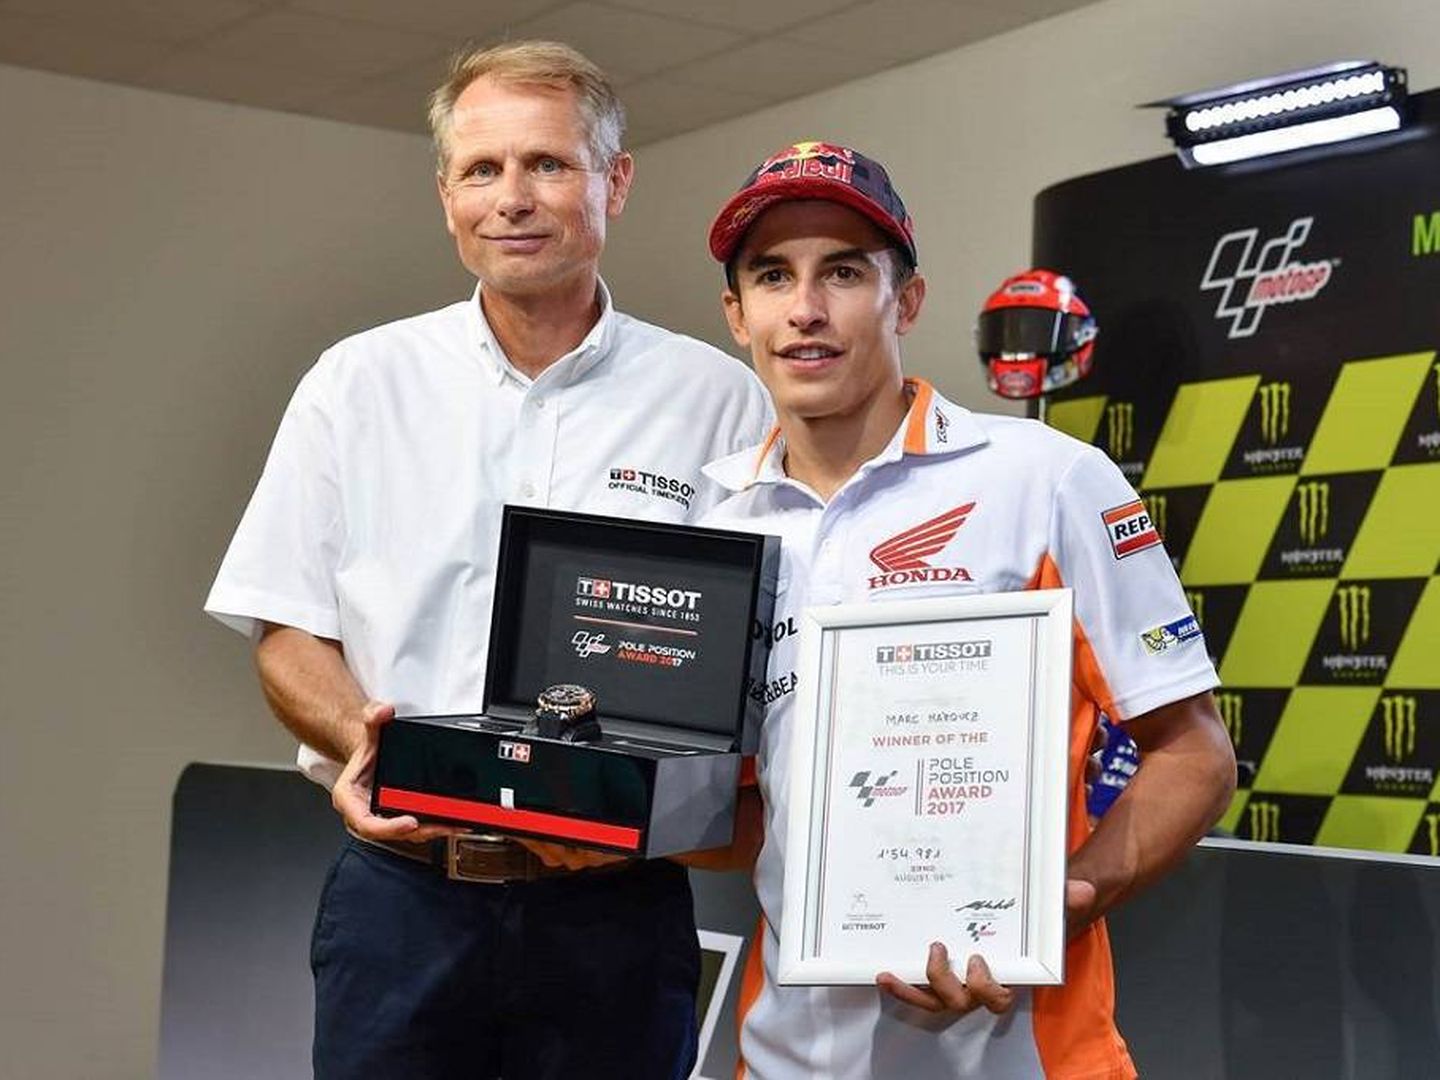 Marc Márquez recibiendo el Pole Position Award de Brno en el año 2017. (Tissot)